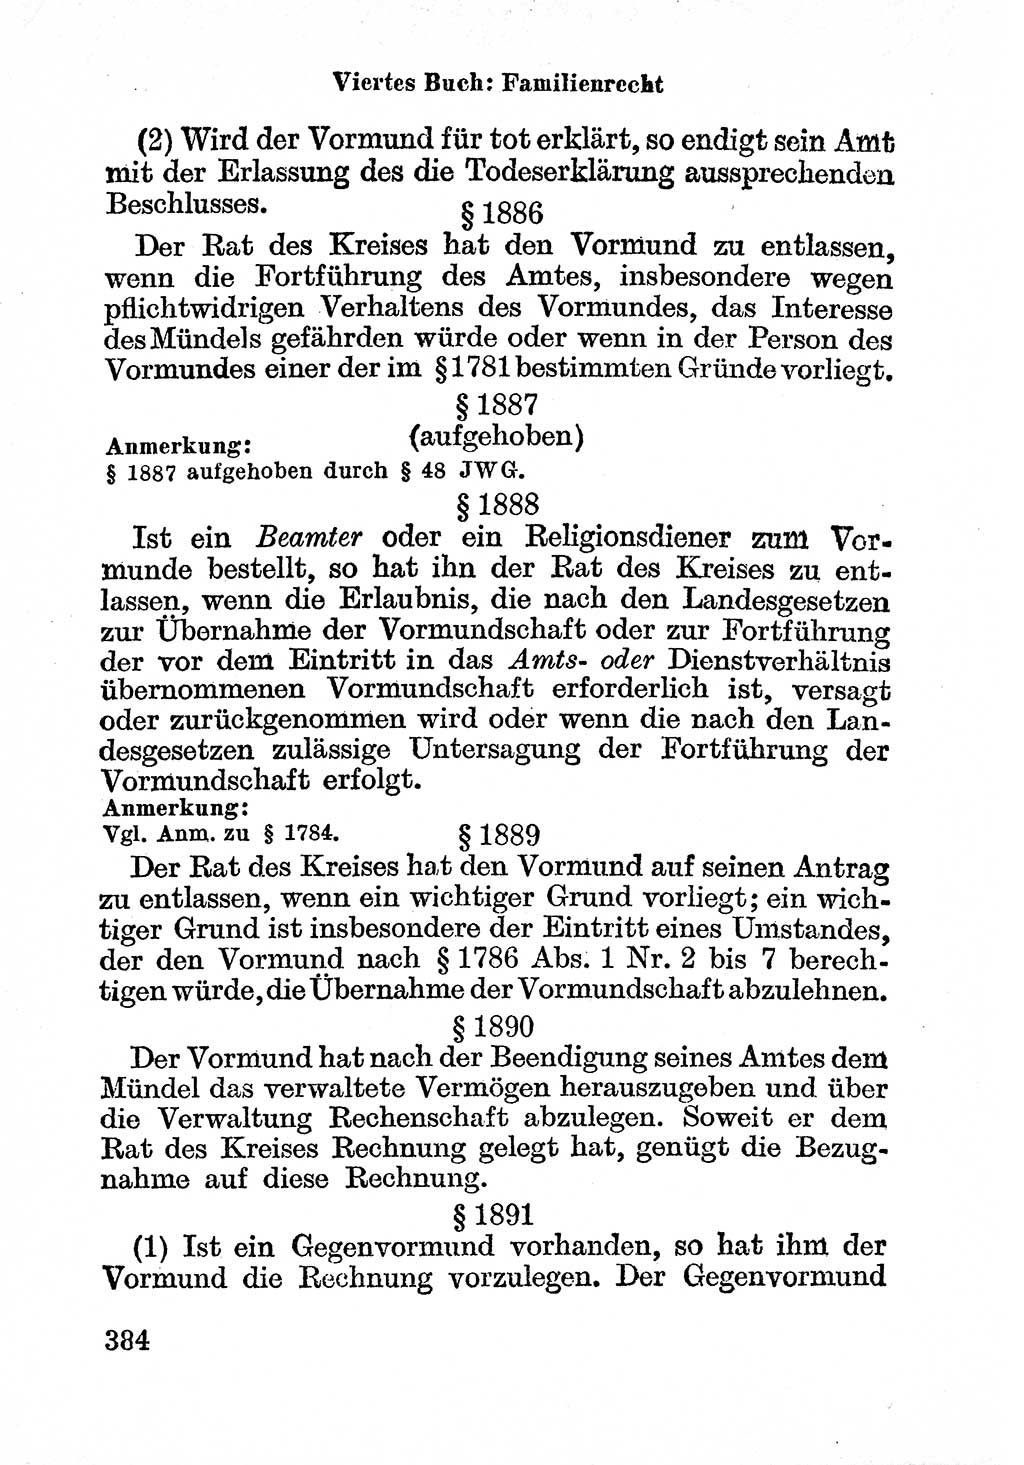 Bürgerliches Gesetzbuch (BGB) nebst wichtigen Nebengesetzen [Deutsche Demokratische Republik (DDR)] 1956, Seite 384 (BGB Nebenges. DDR 1956, S. 384)